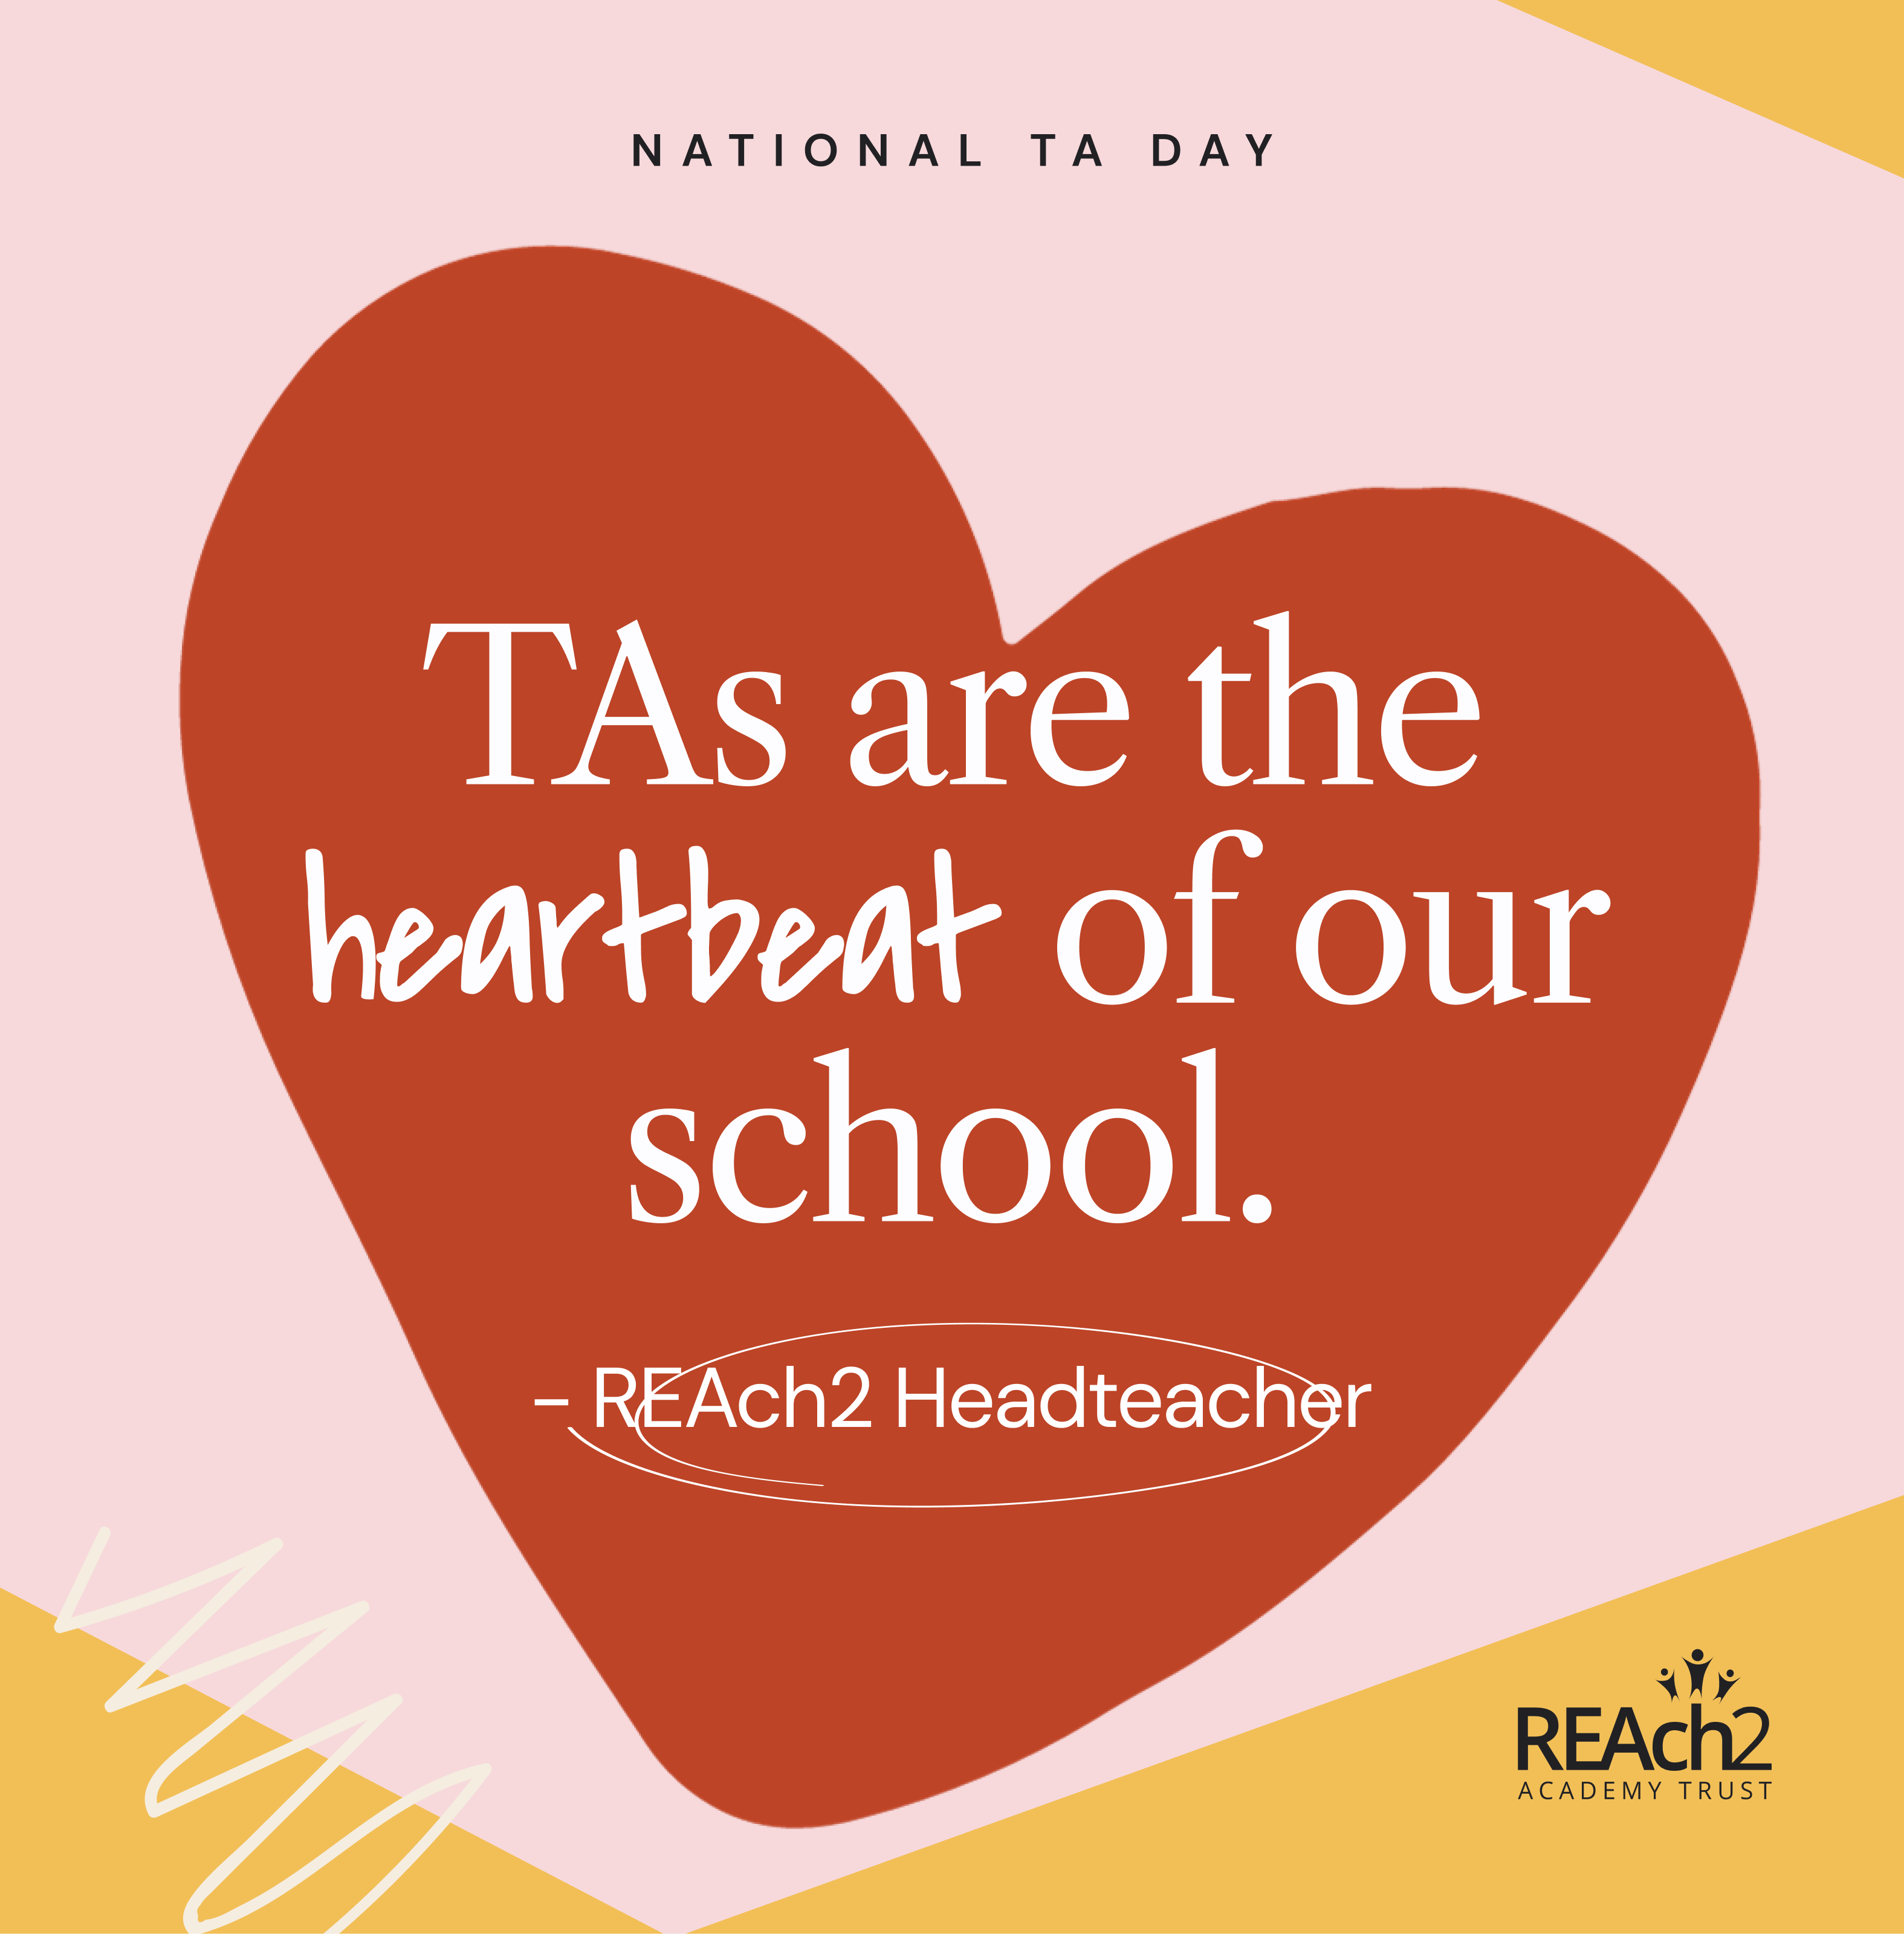 "TAs are the heartbeat of our school." - REAch2 Headteacher